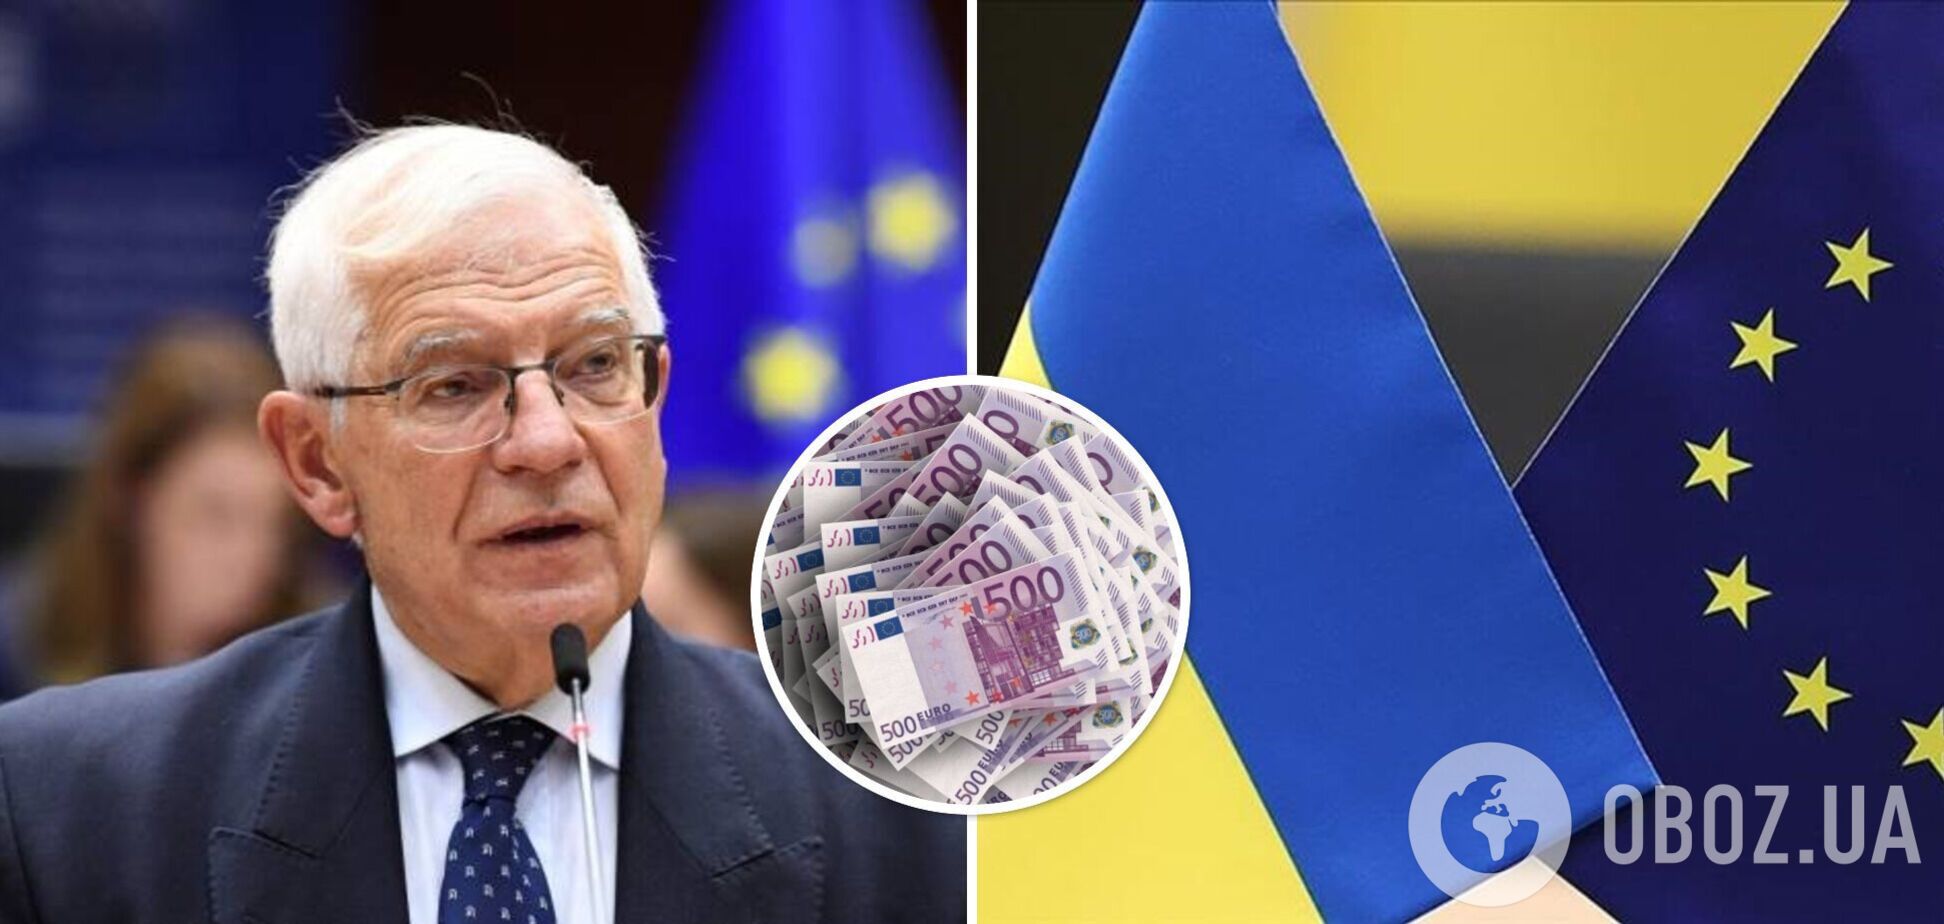 ЕС может увеличить фонд, из которого идет финансирование оружия для Украины, на 3,5 млрд евро: Боррель выступил с заявлением